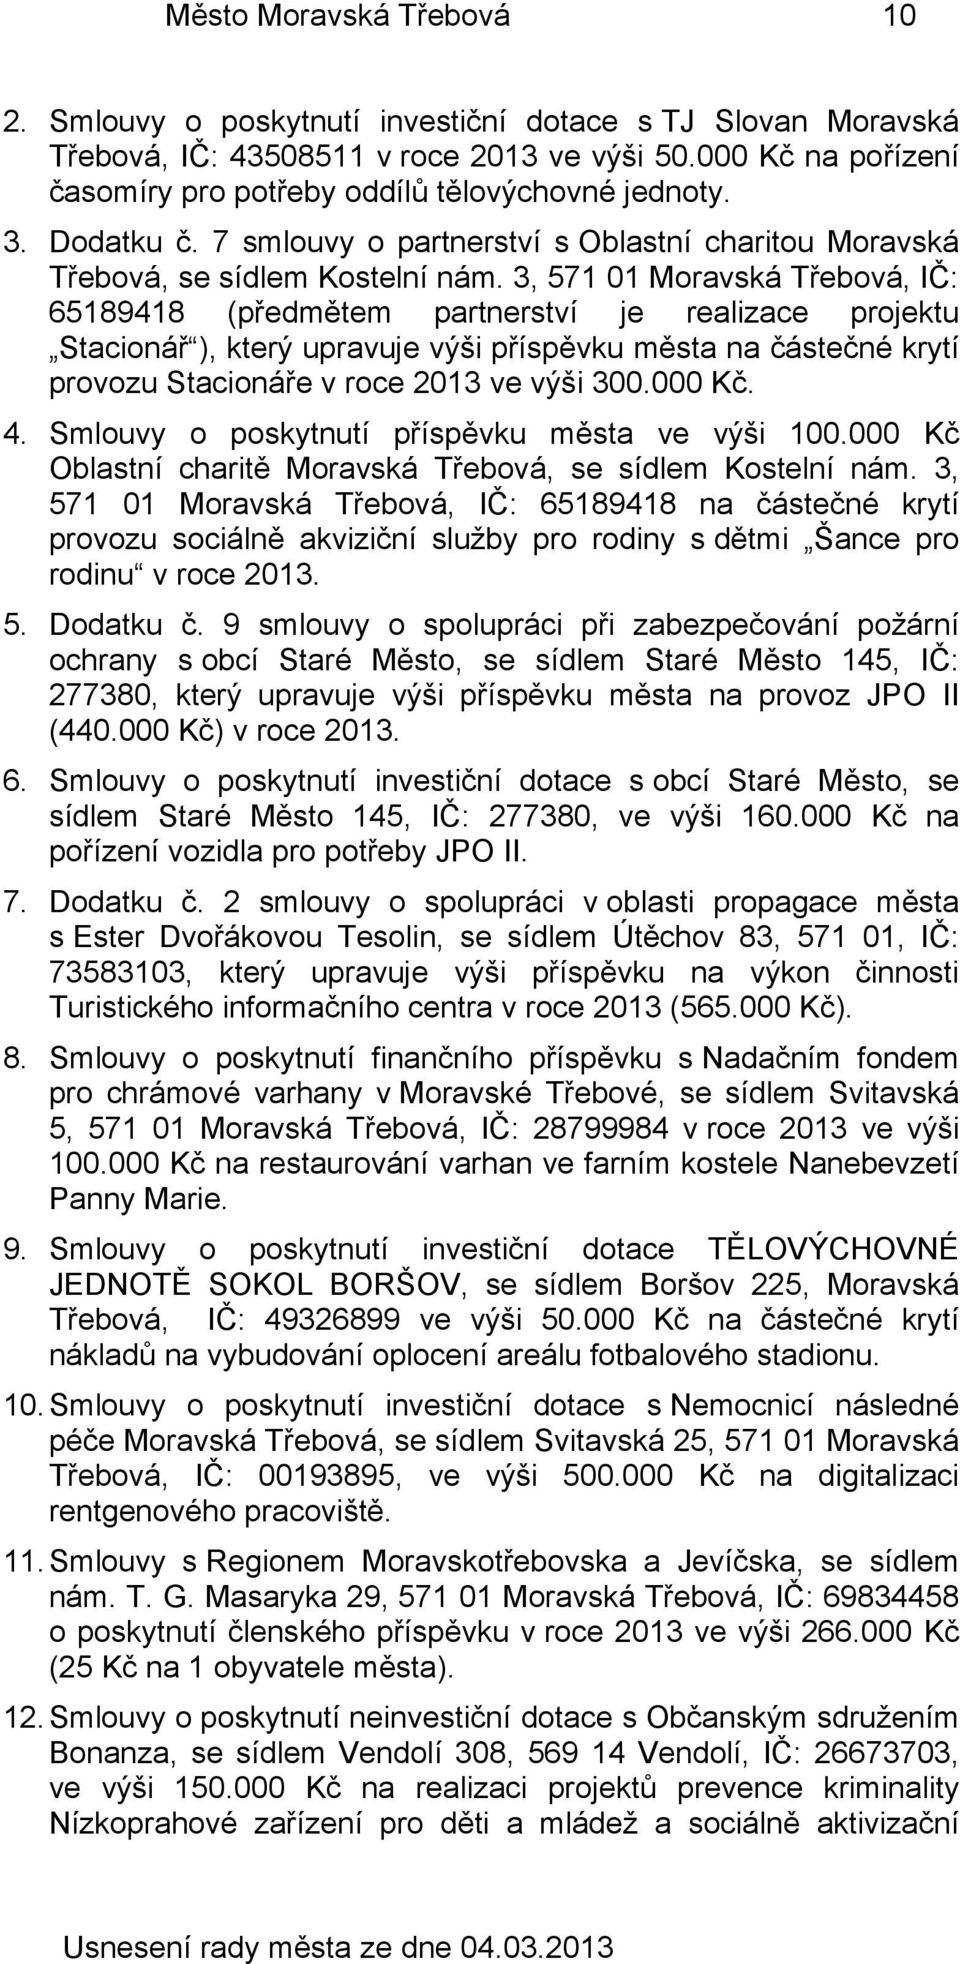 3, 571 01 Moravská Třebová, IČ: 65189418 (předmětem partnerství je realizace projektu Stacionář ), který upravuje výši příspěvku města na částečné krytí provozu Stacionáře v roce 2013 ve výši 300.